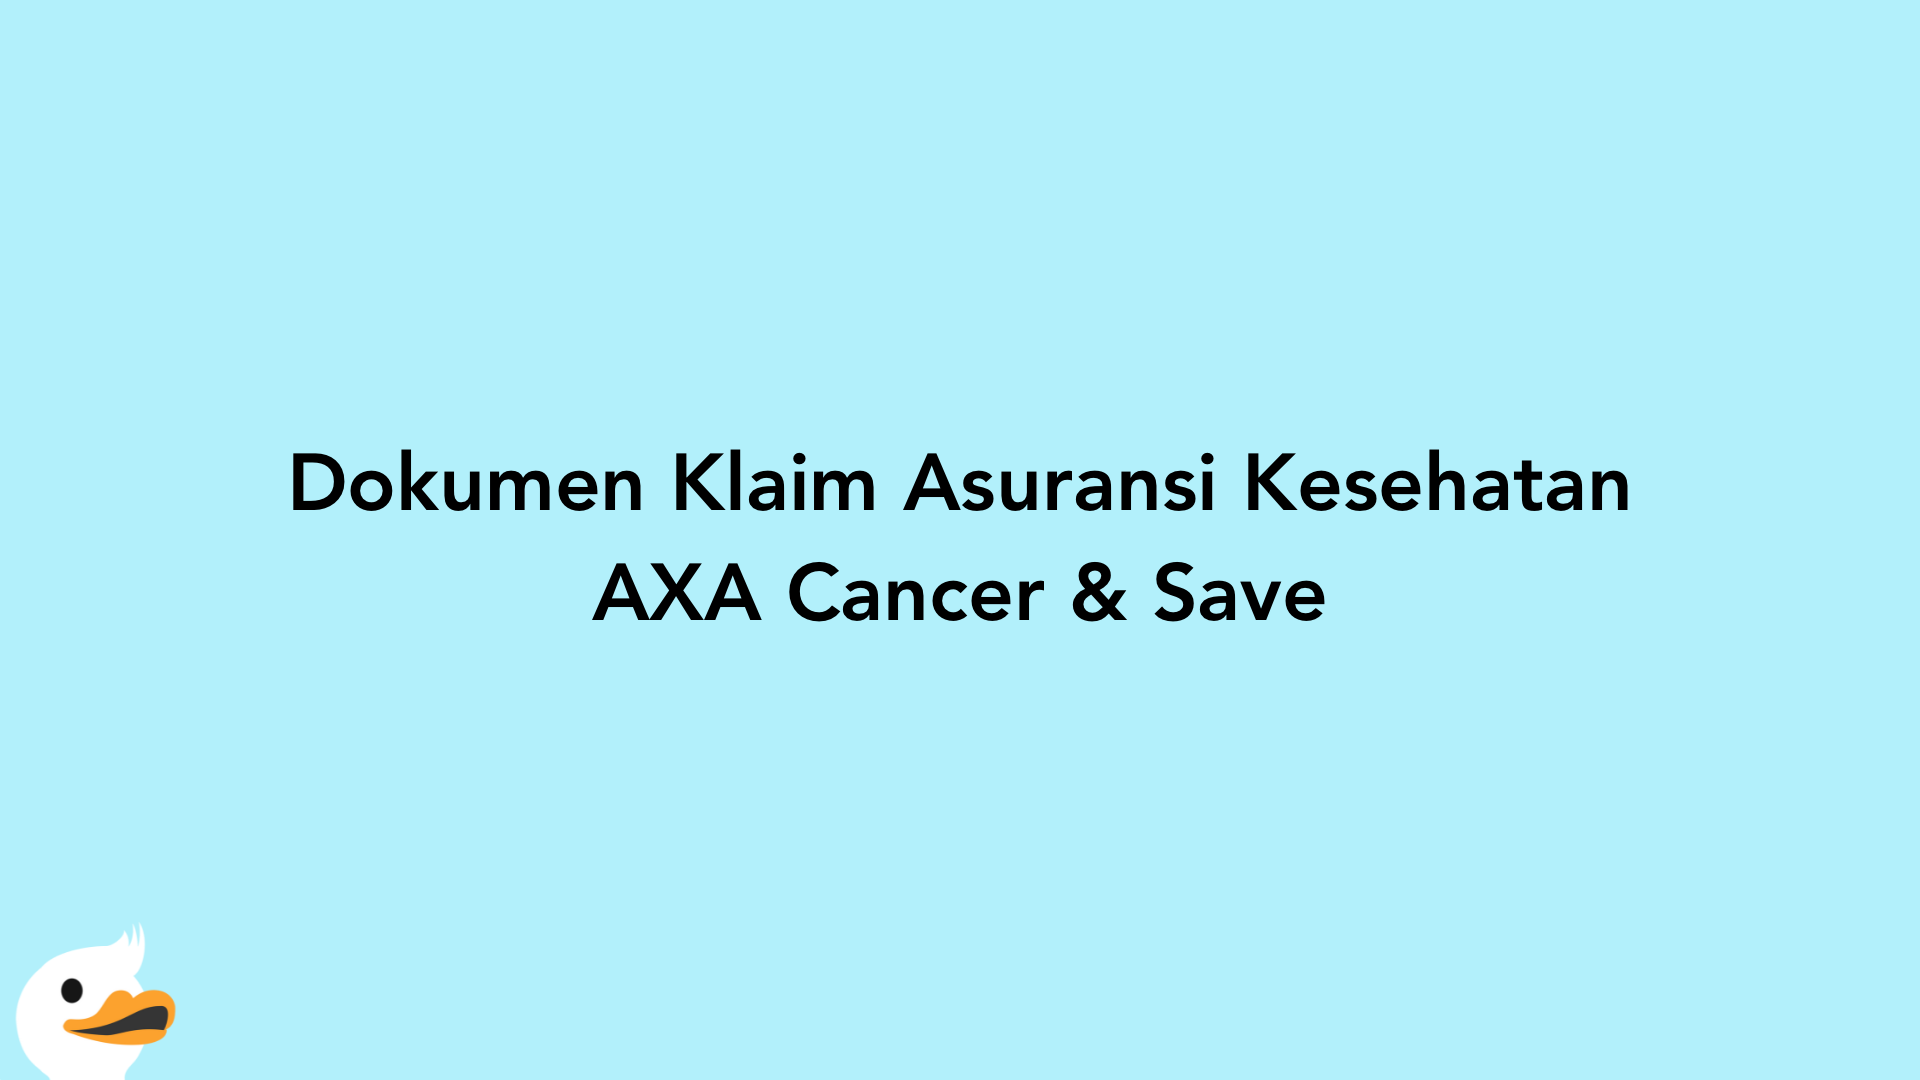 Dokumen Klaim Asuransi Kesehatan AXA Cancer & Save